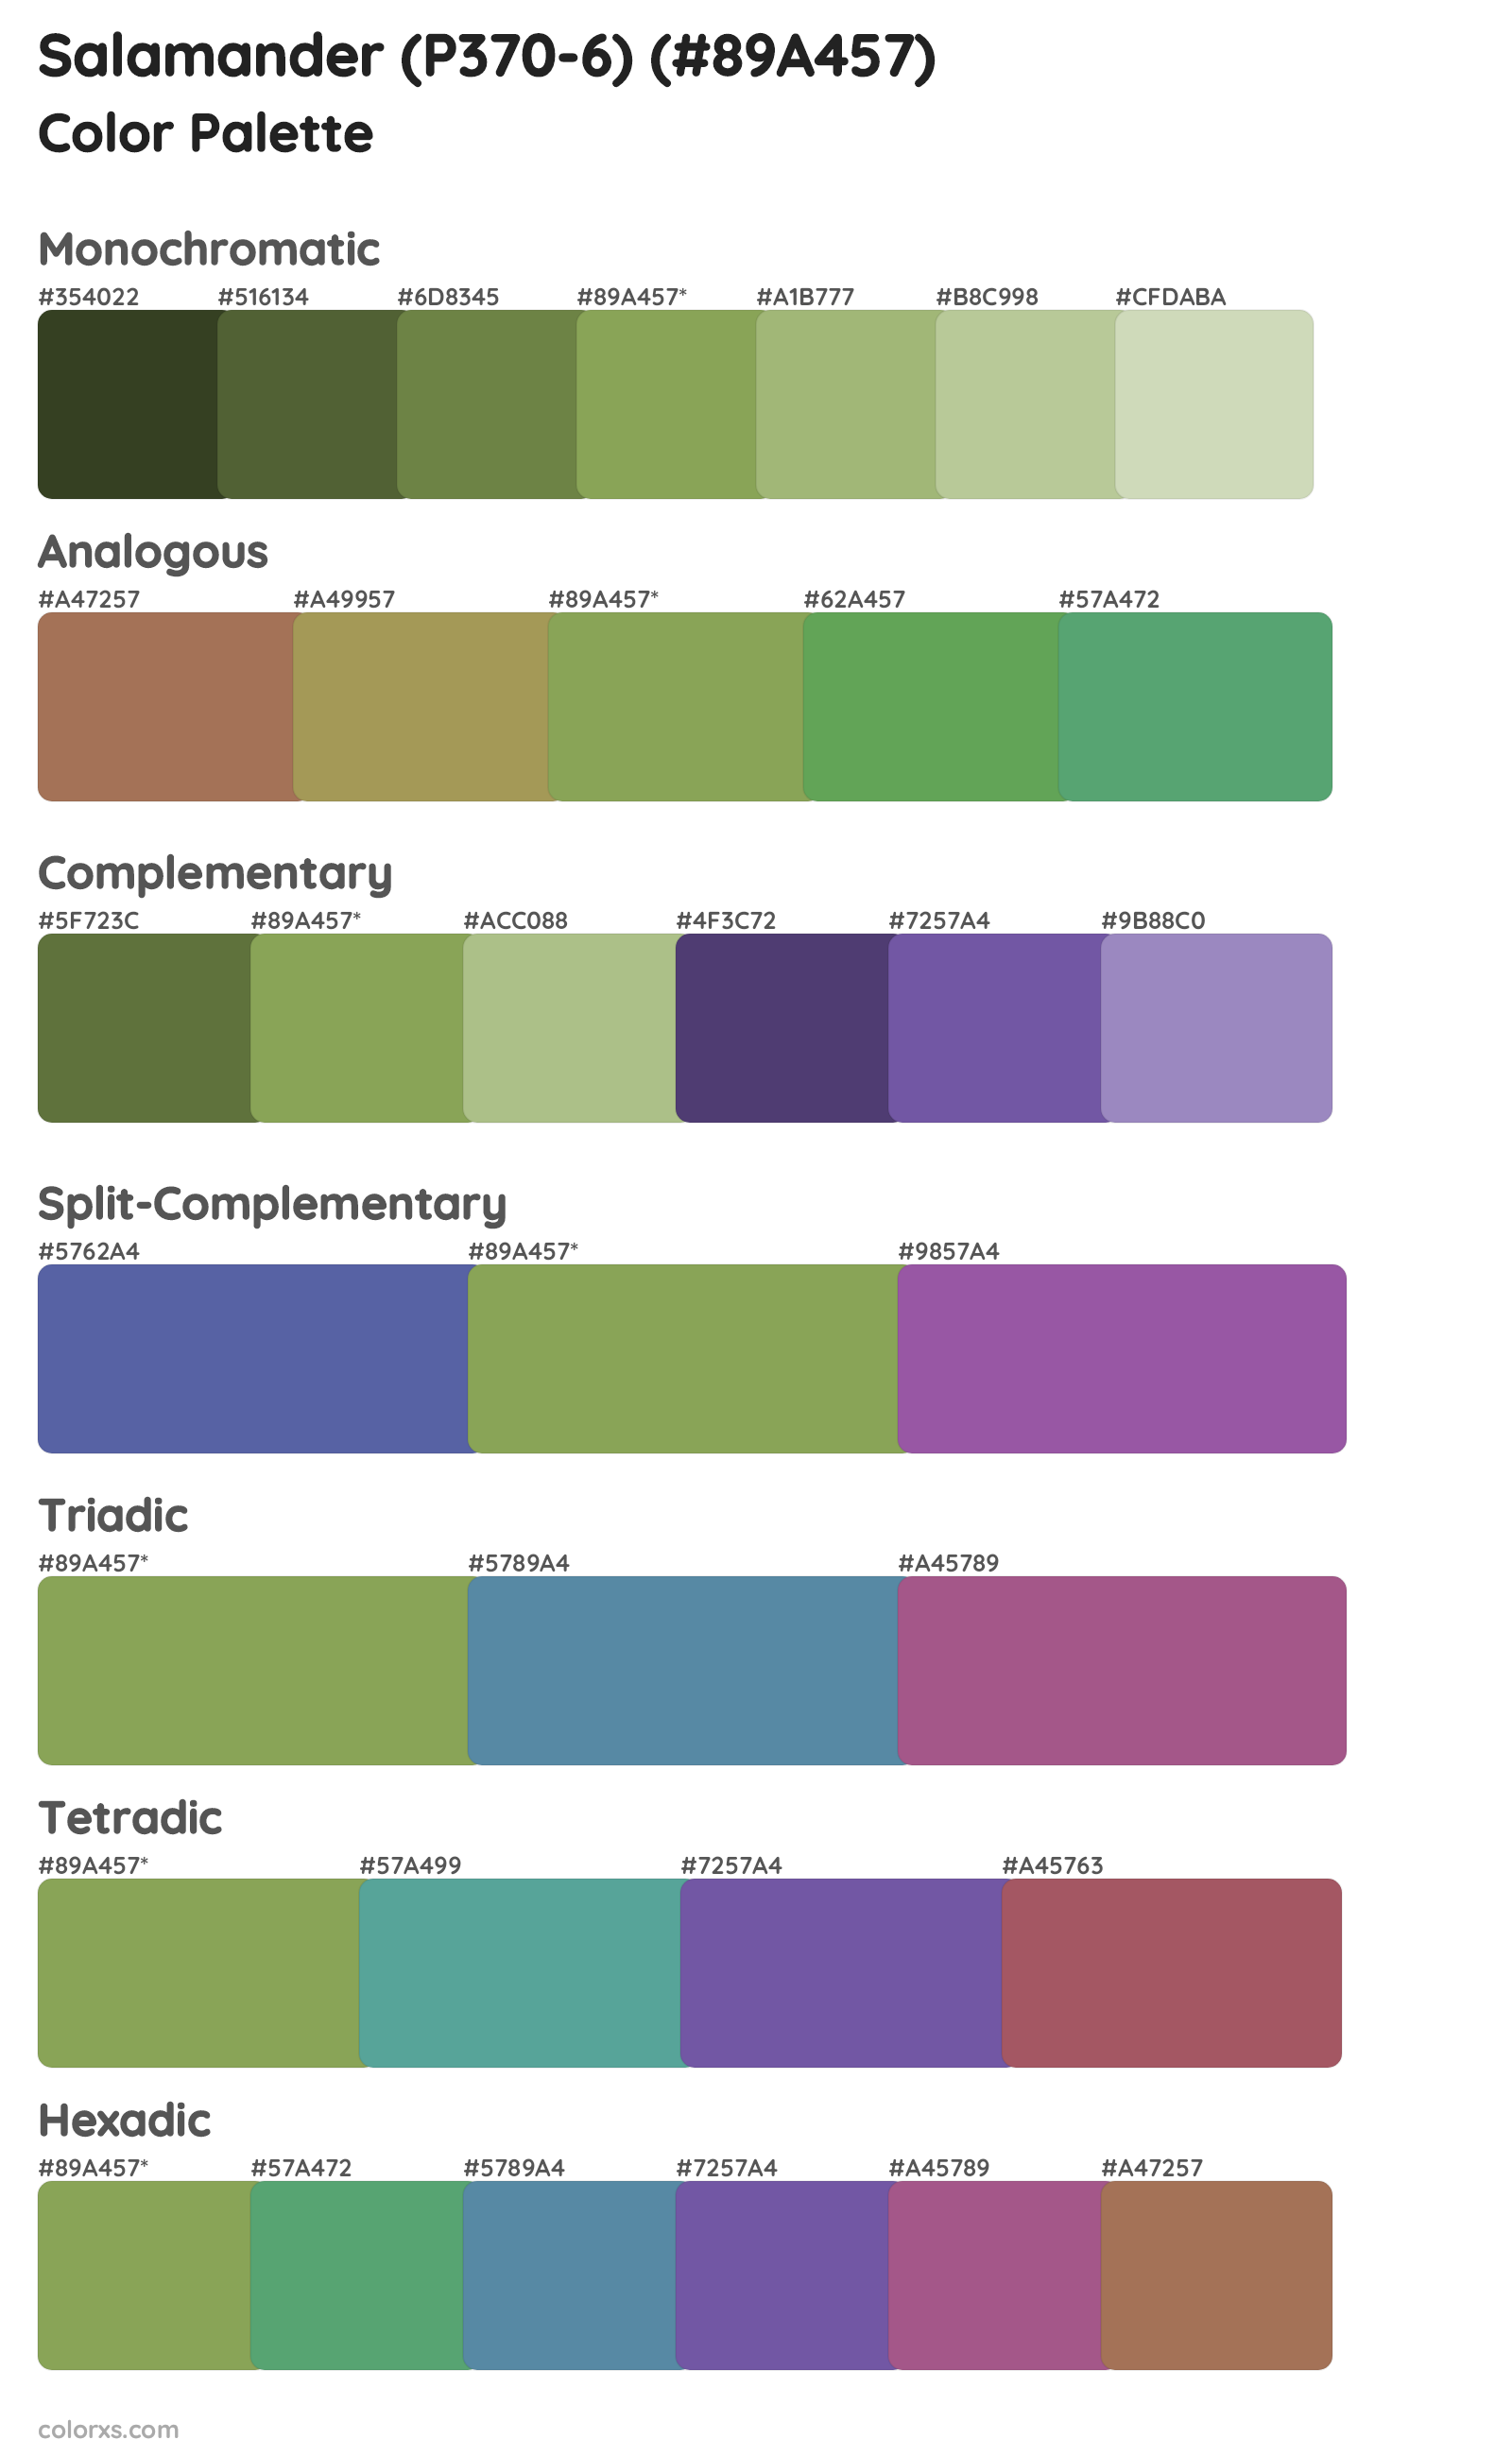 Salamander (P370-6) Color Scheme Palettes